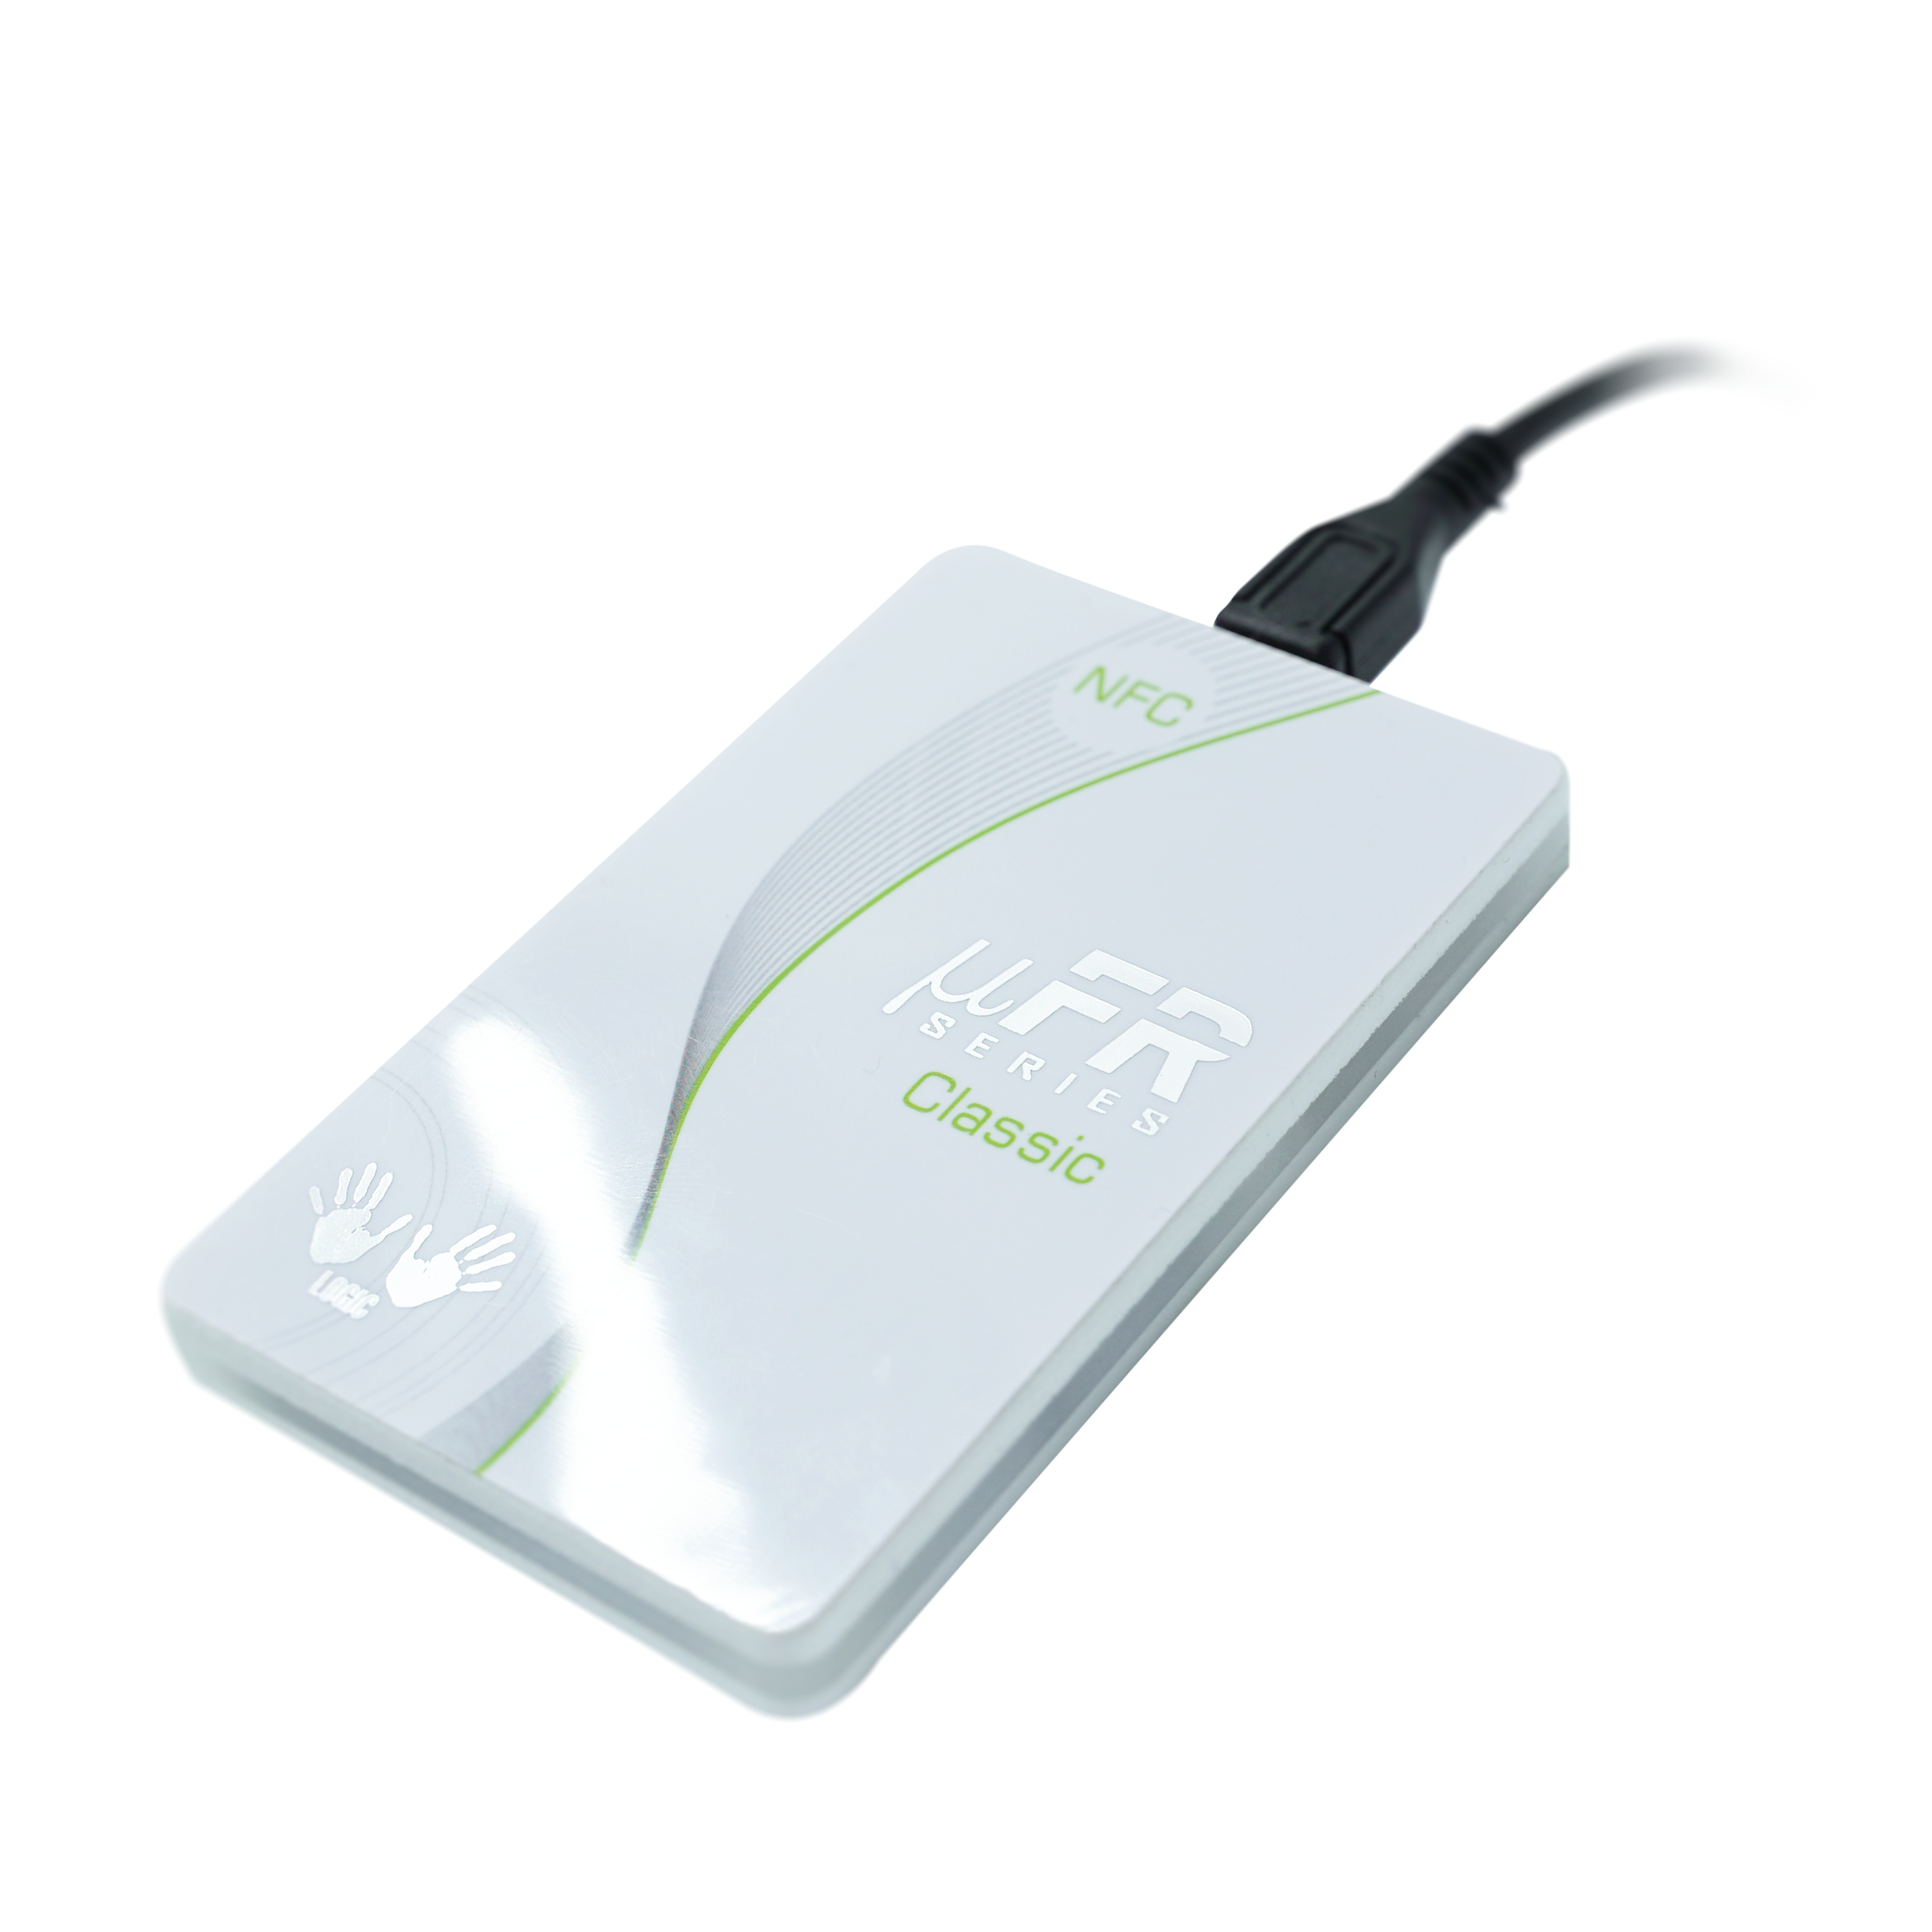 Schrägansicht des NFC Reader/Writer mit angeschlossenem Micro-USB Kabel